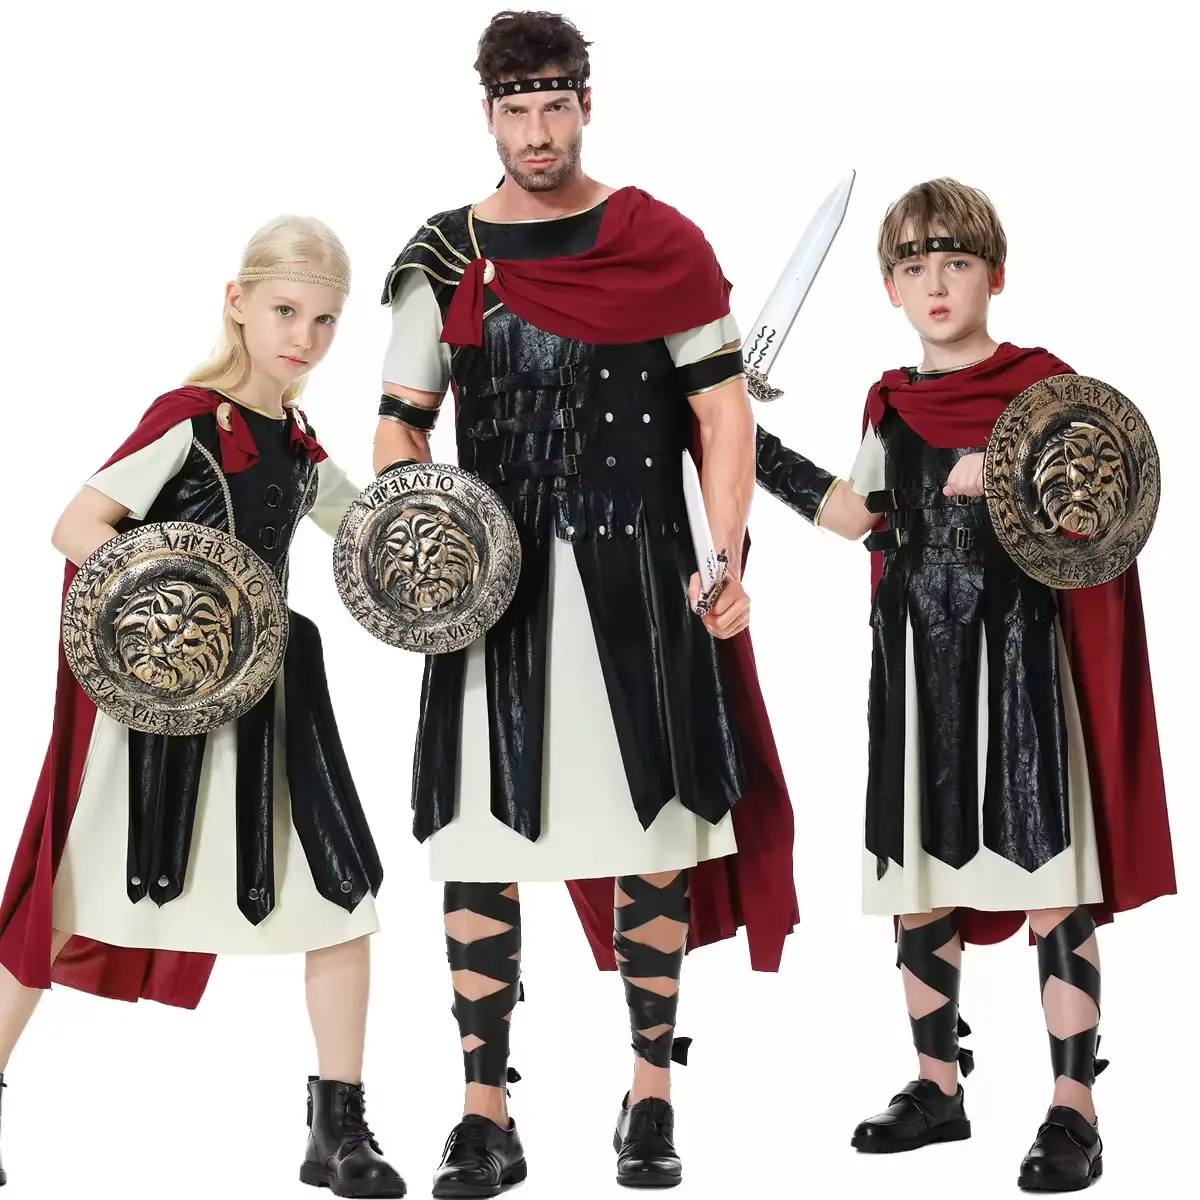 Trajes infantis de guerreiro romano antigo para Halloween, cosplay adulto, roupa de guerreiro espartano com capa e faca, fantasia de guerreiro